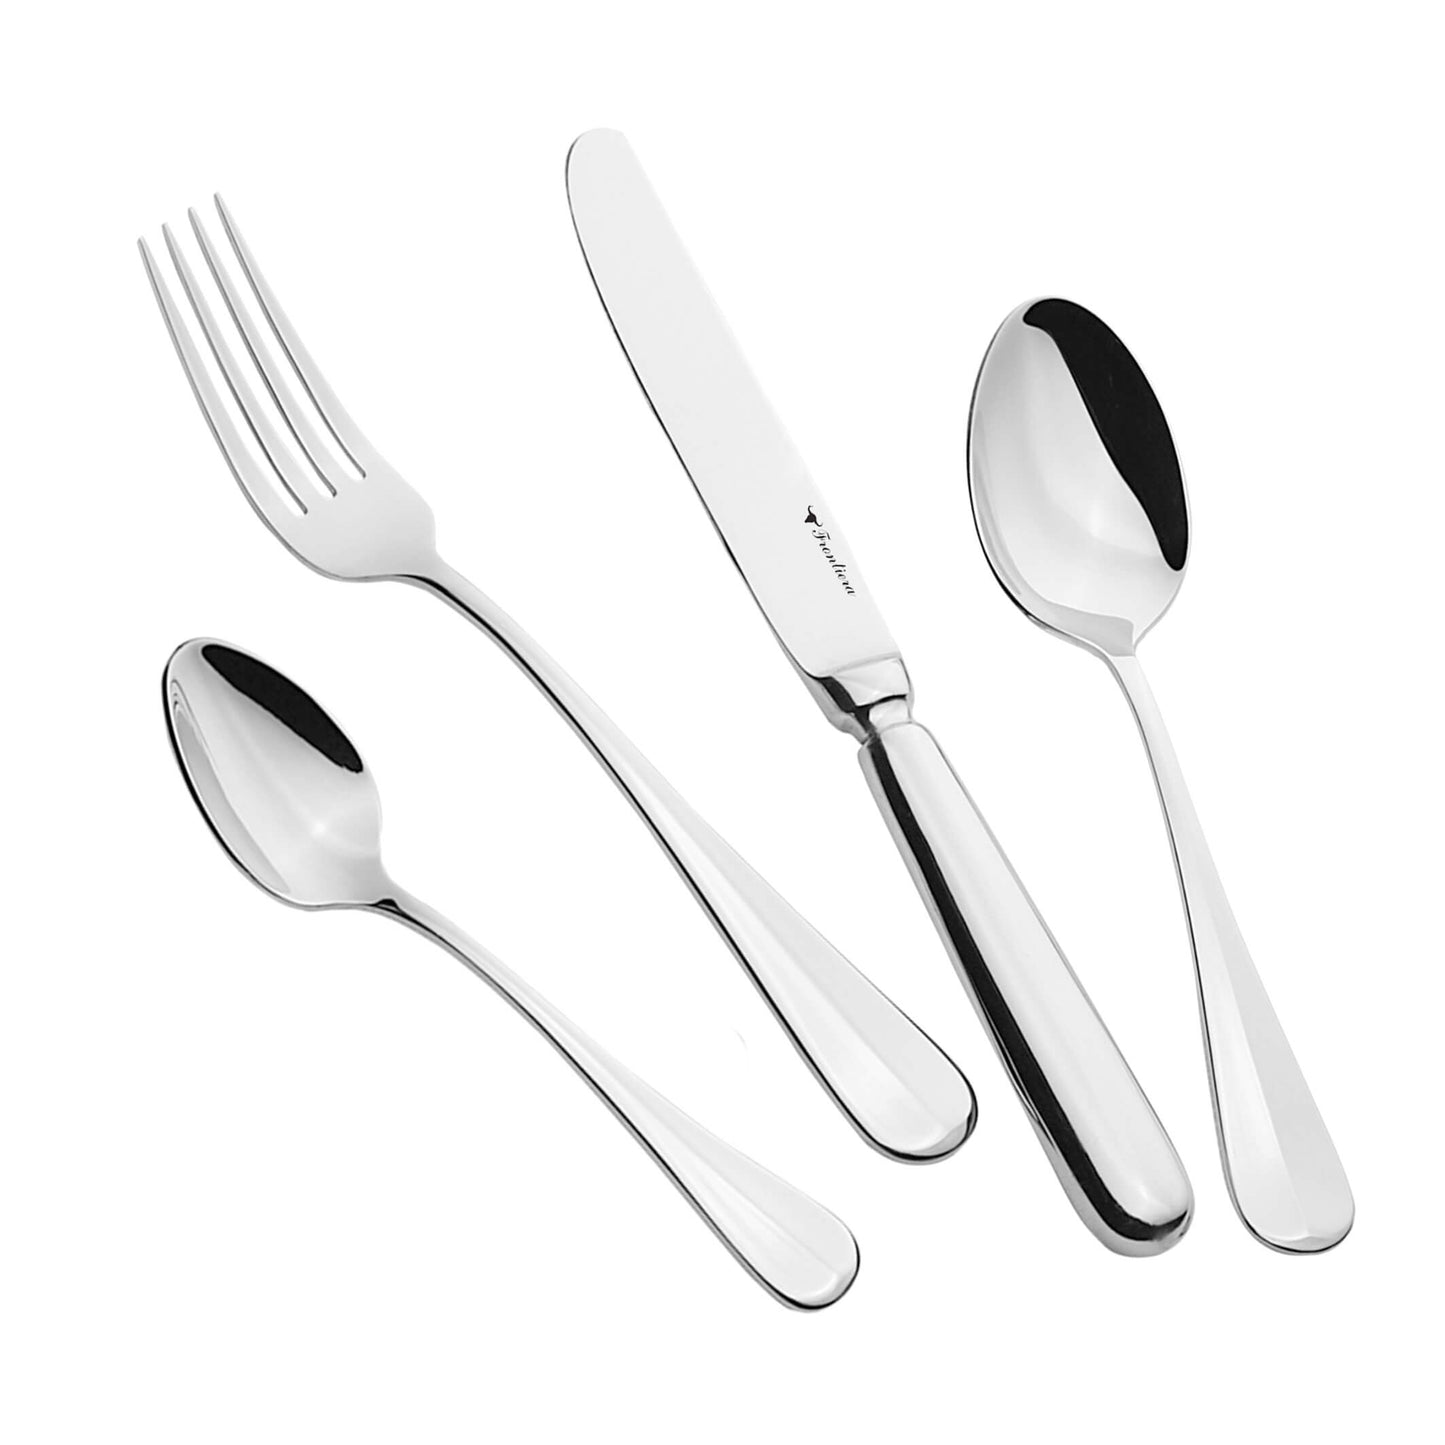 Frontiera Baguette 24Pcs, 6-Person Cutlery Set